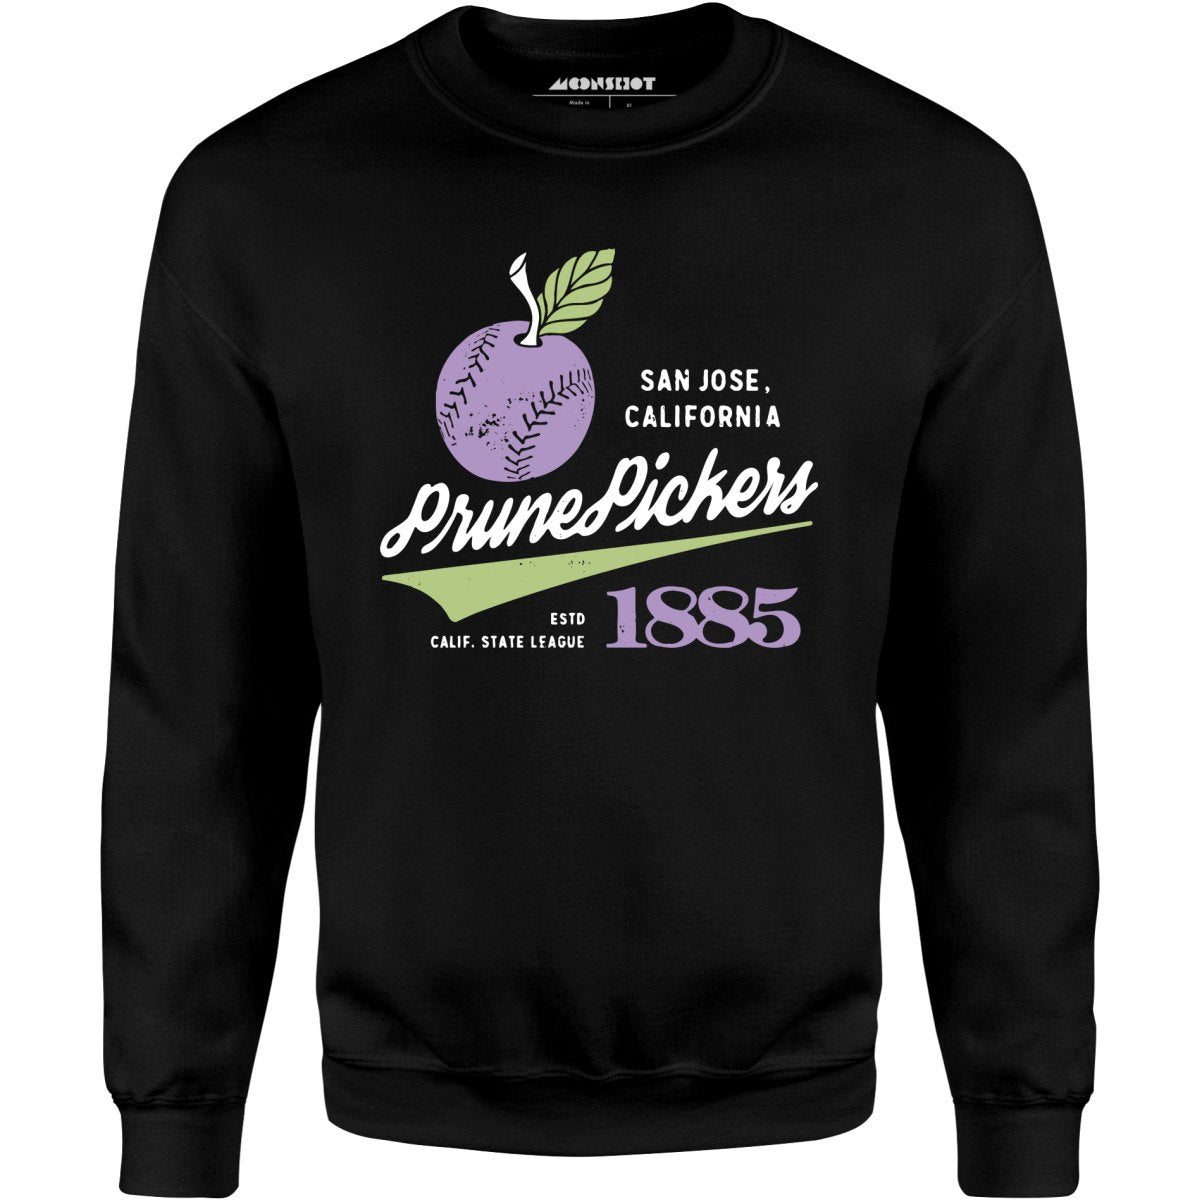 San Jose Prune Pickers - California - Vintage Defunct Baseball Teams - Unisex Sweatshirt